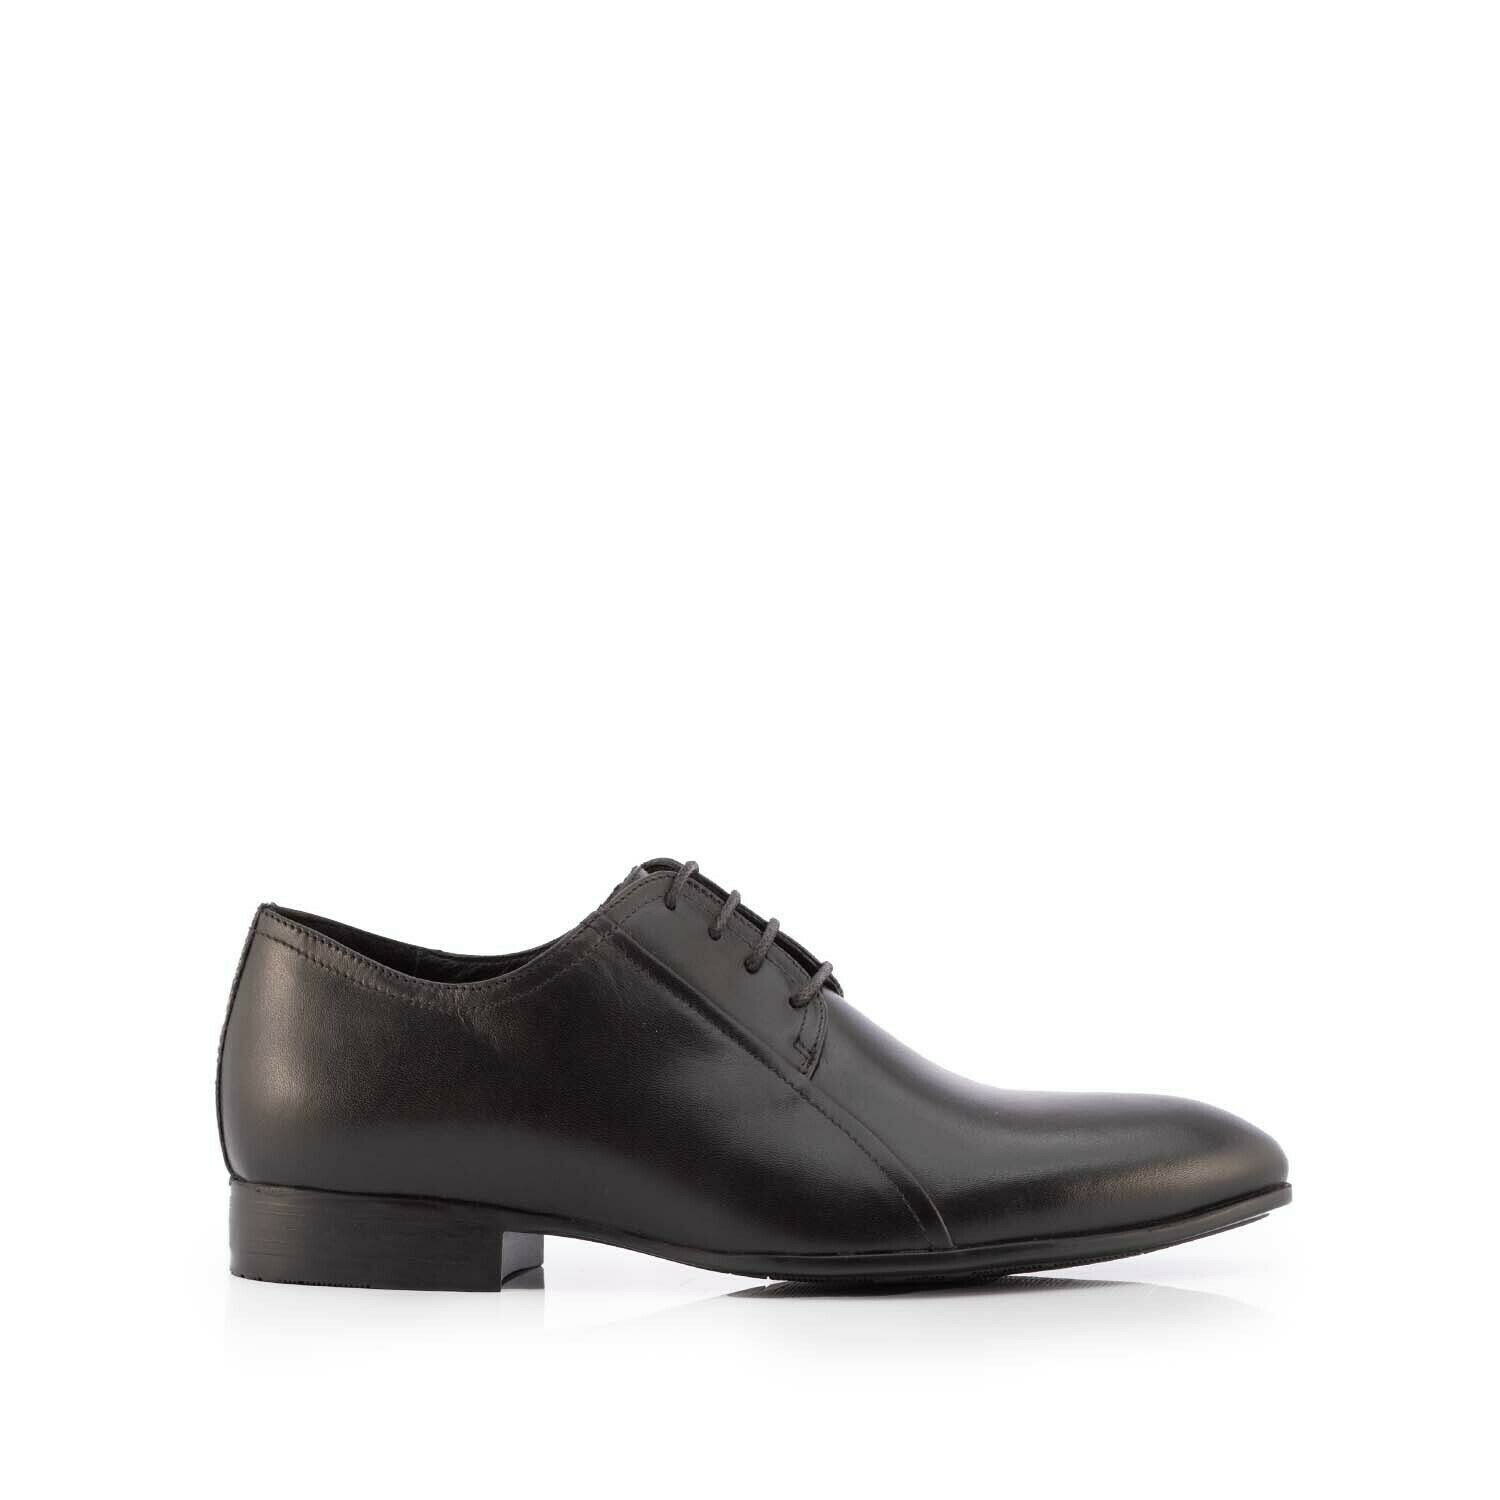 Pantofi eleganți bărbați din piele naturală, Leofex - Mostră 743 Negru Box